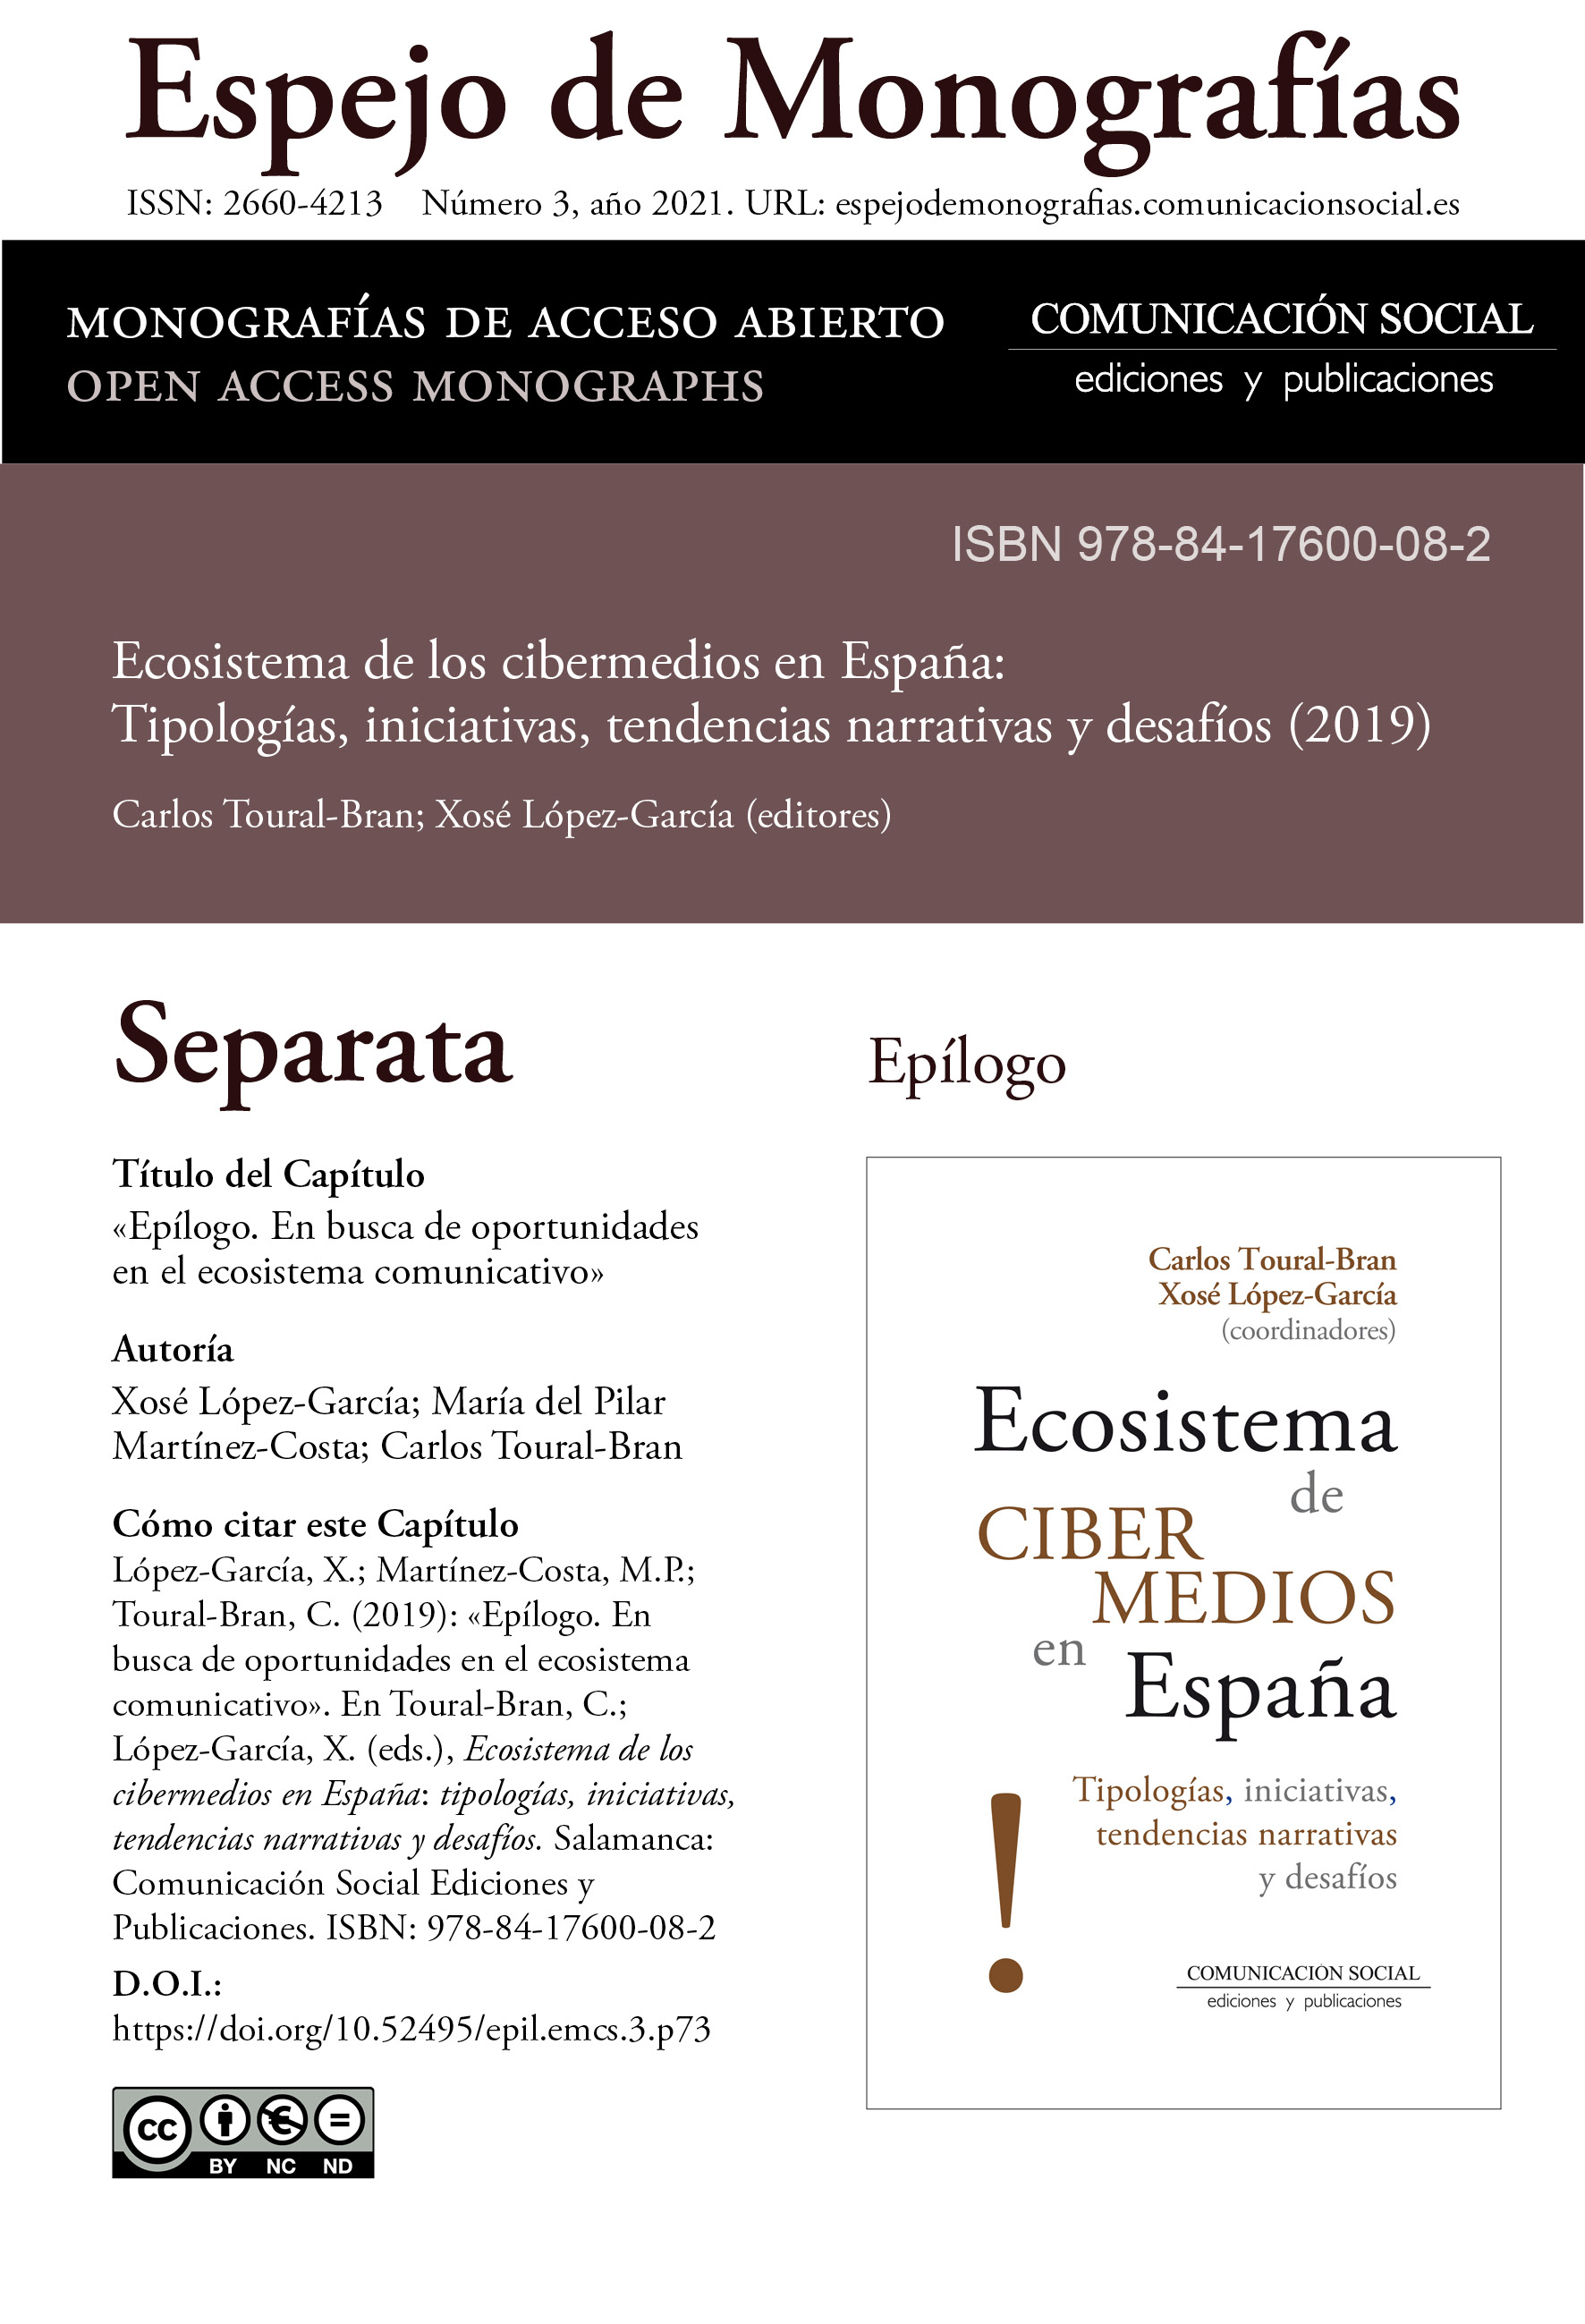 Separata del Epílogo correspondiente a la monografía Ecosistema de cibermedios en España